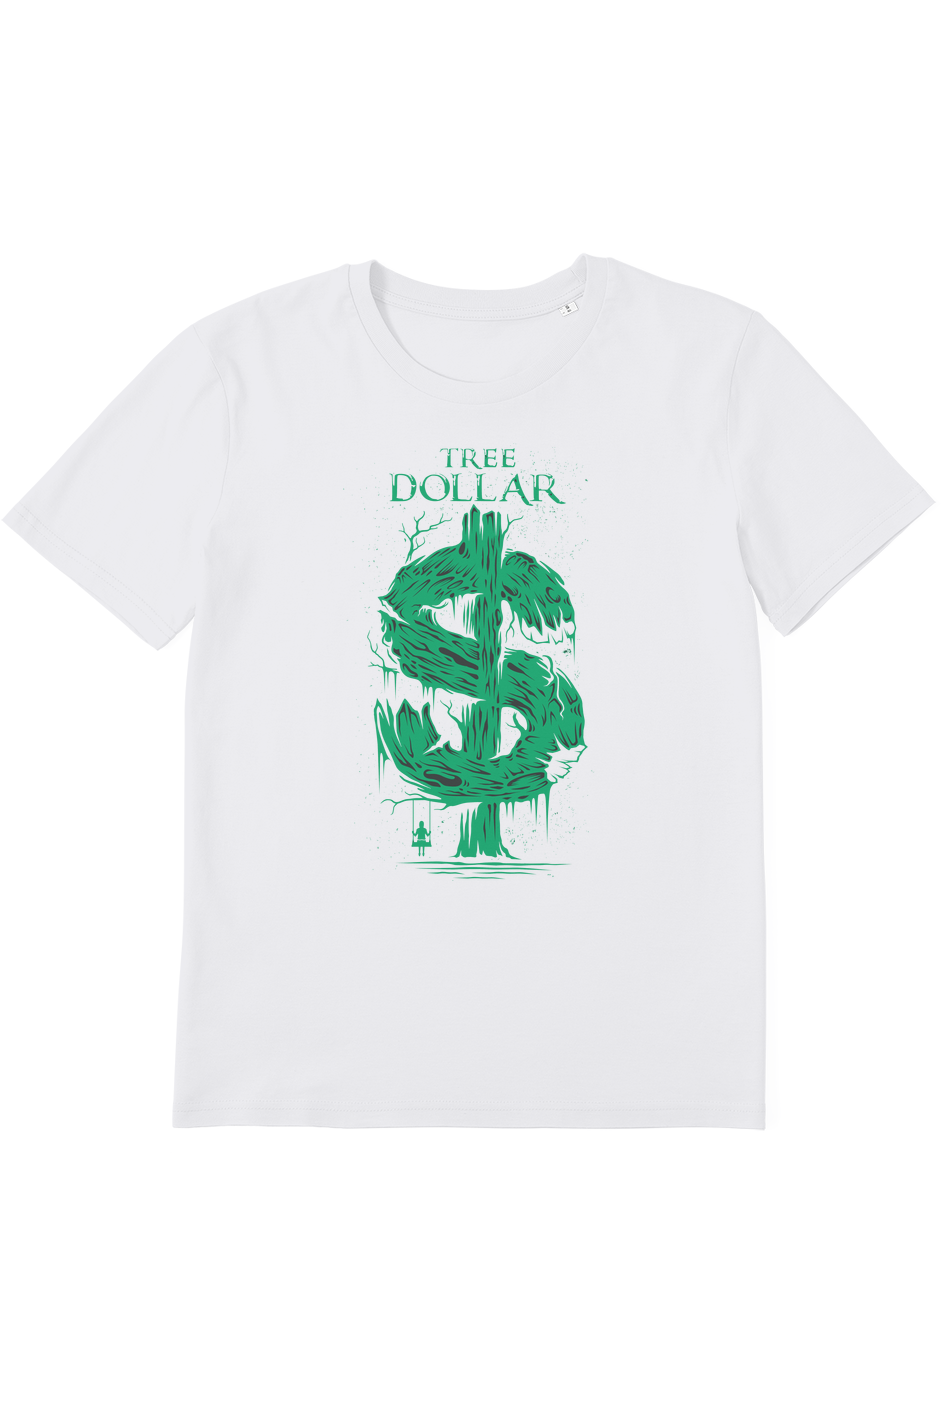 Tree Dollar Organic T-Shirt vegan, sustainable, organic streetwear, - TRVTH ORGANIC CLOTHING